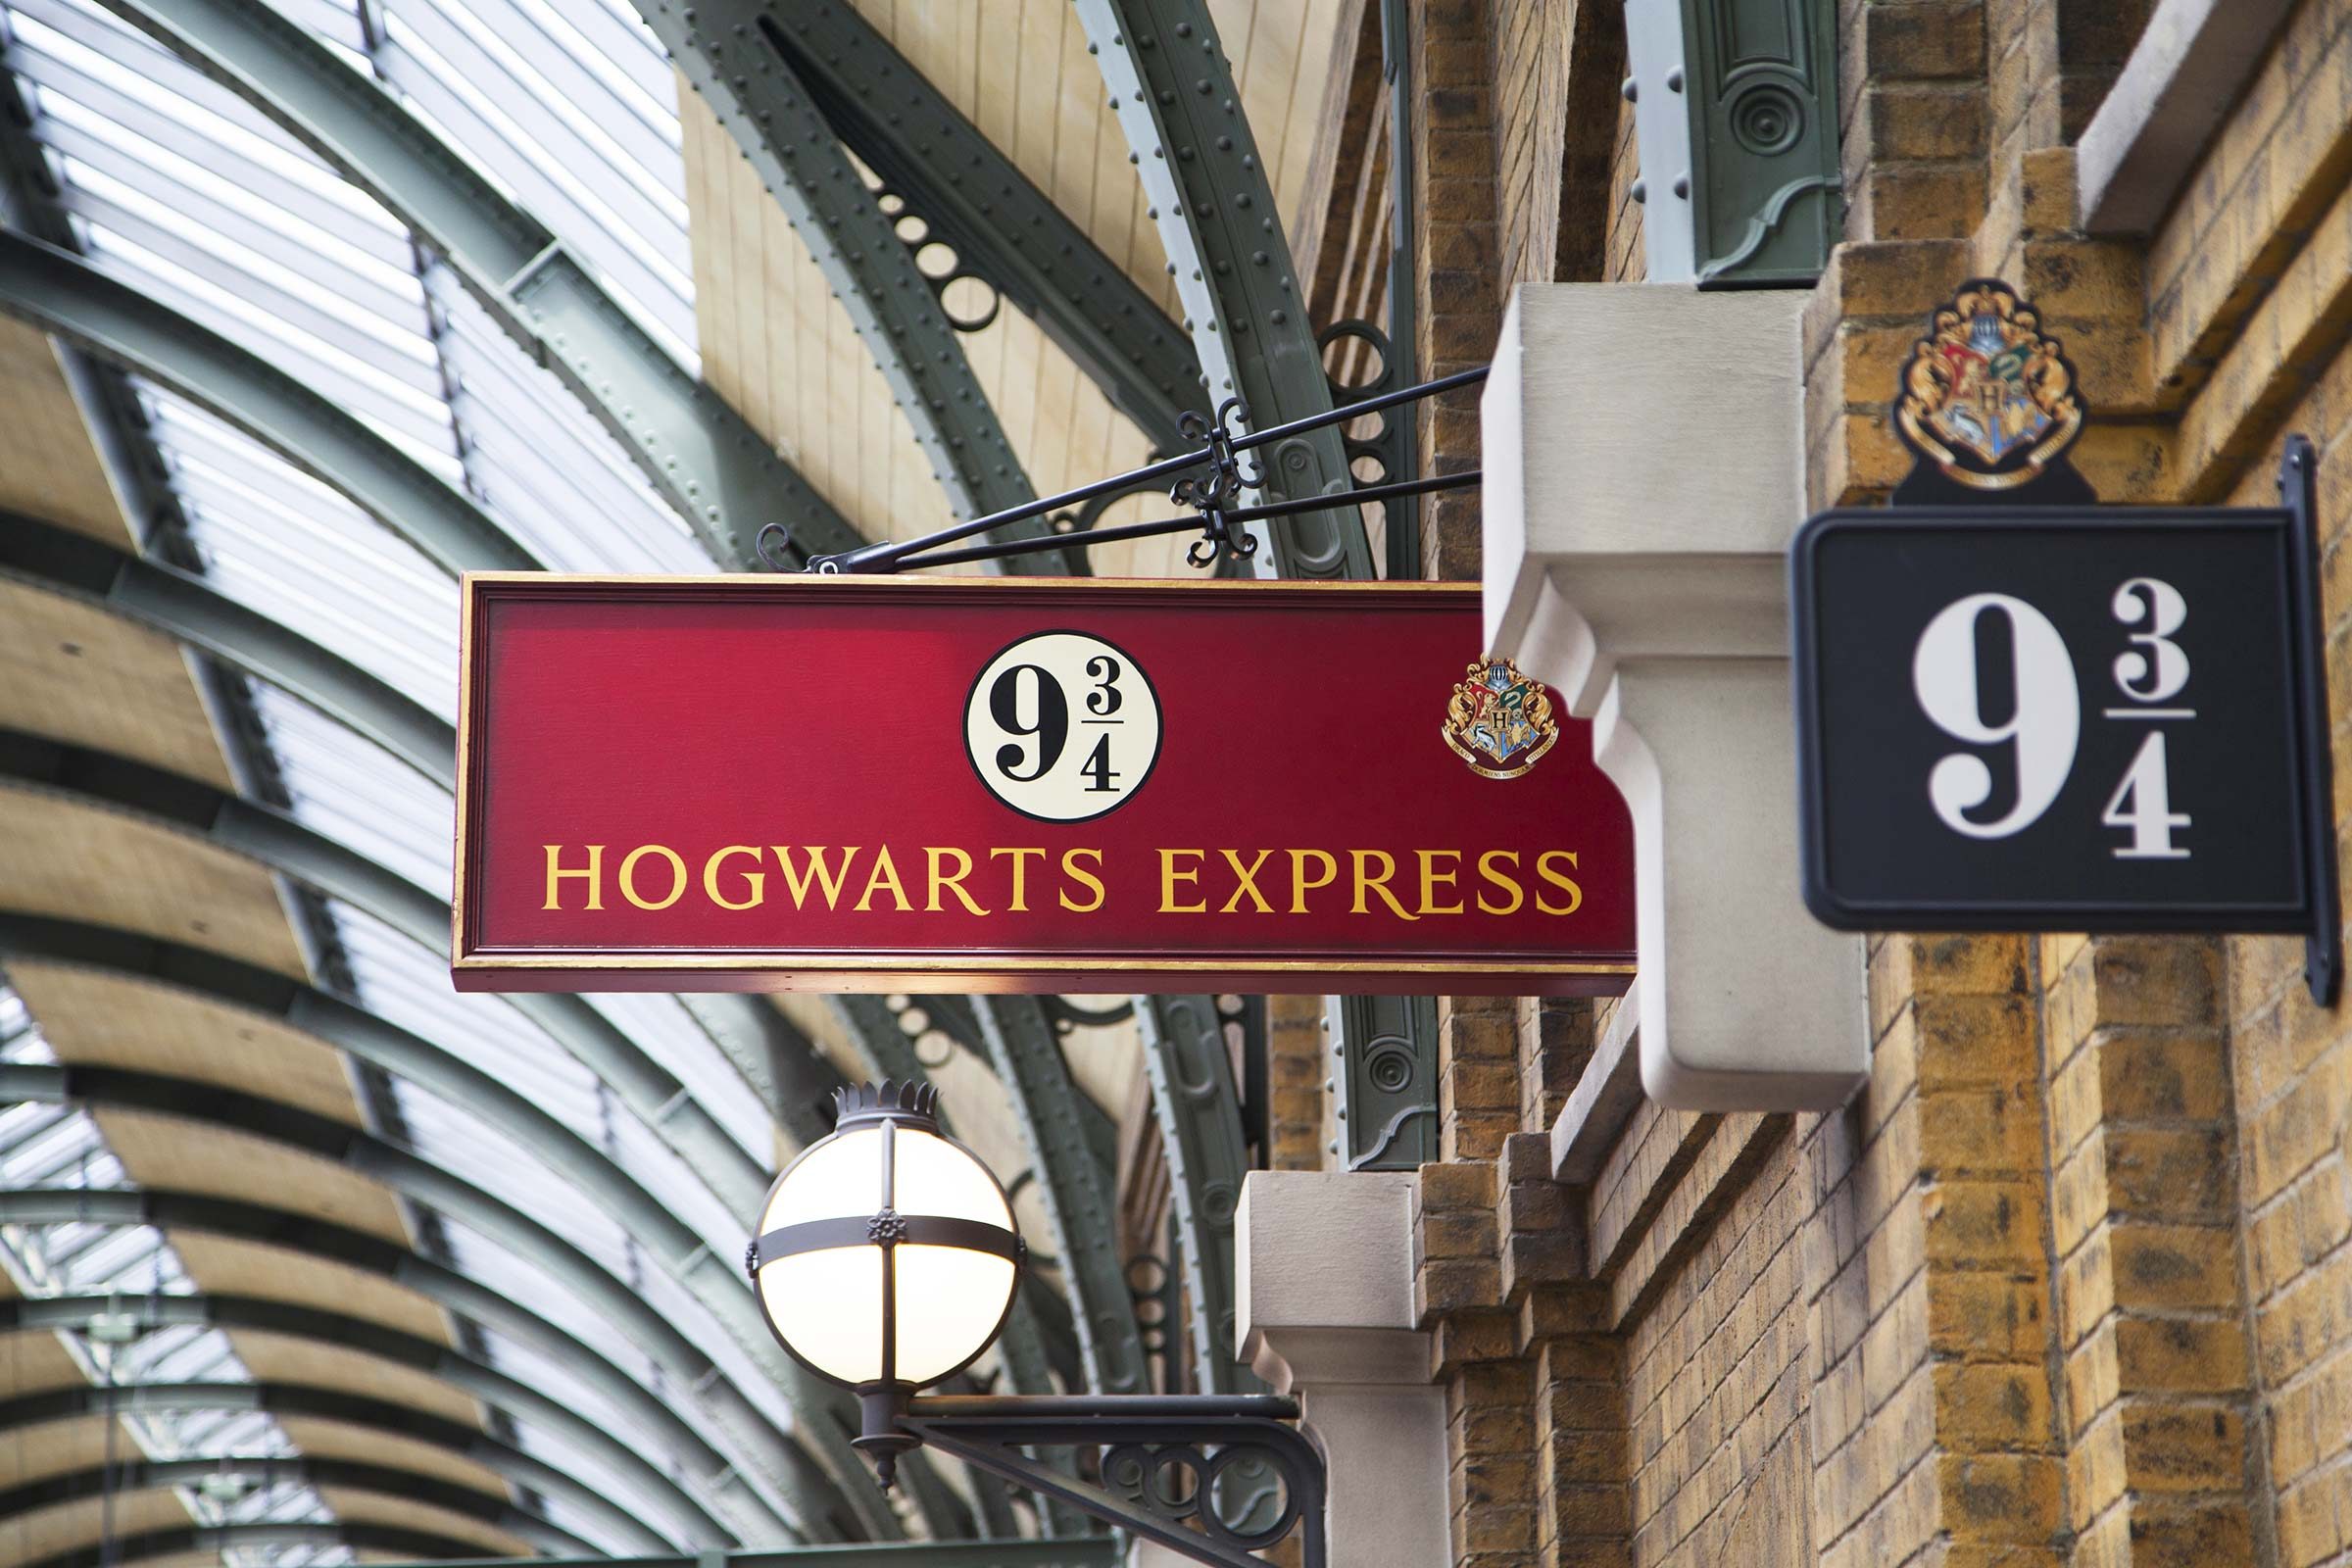 Harry Potter real life - King's Cross Station, platform 9 3/4